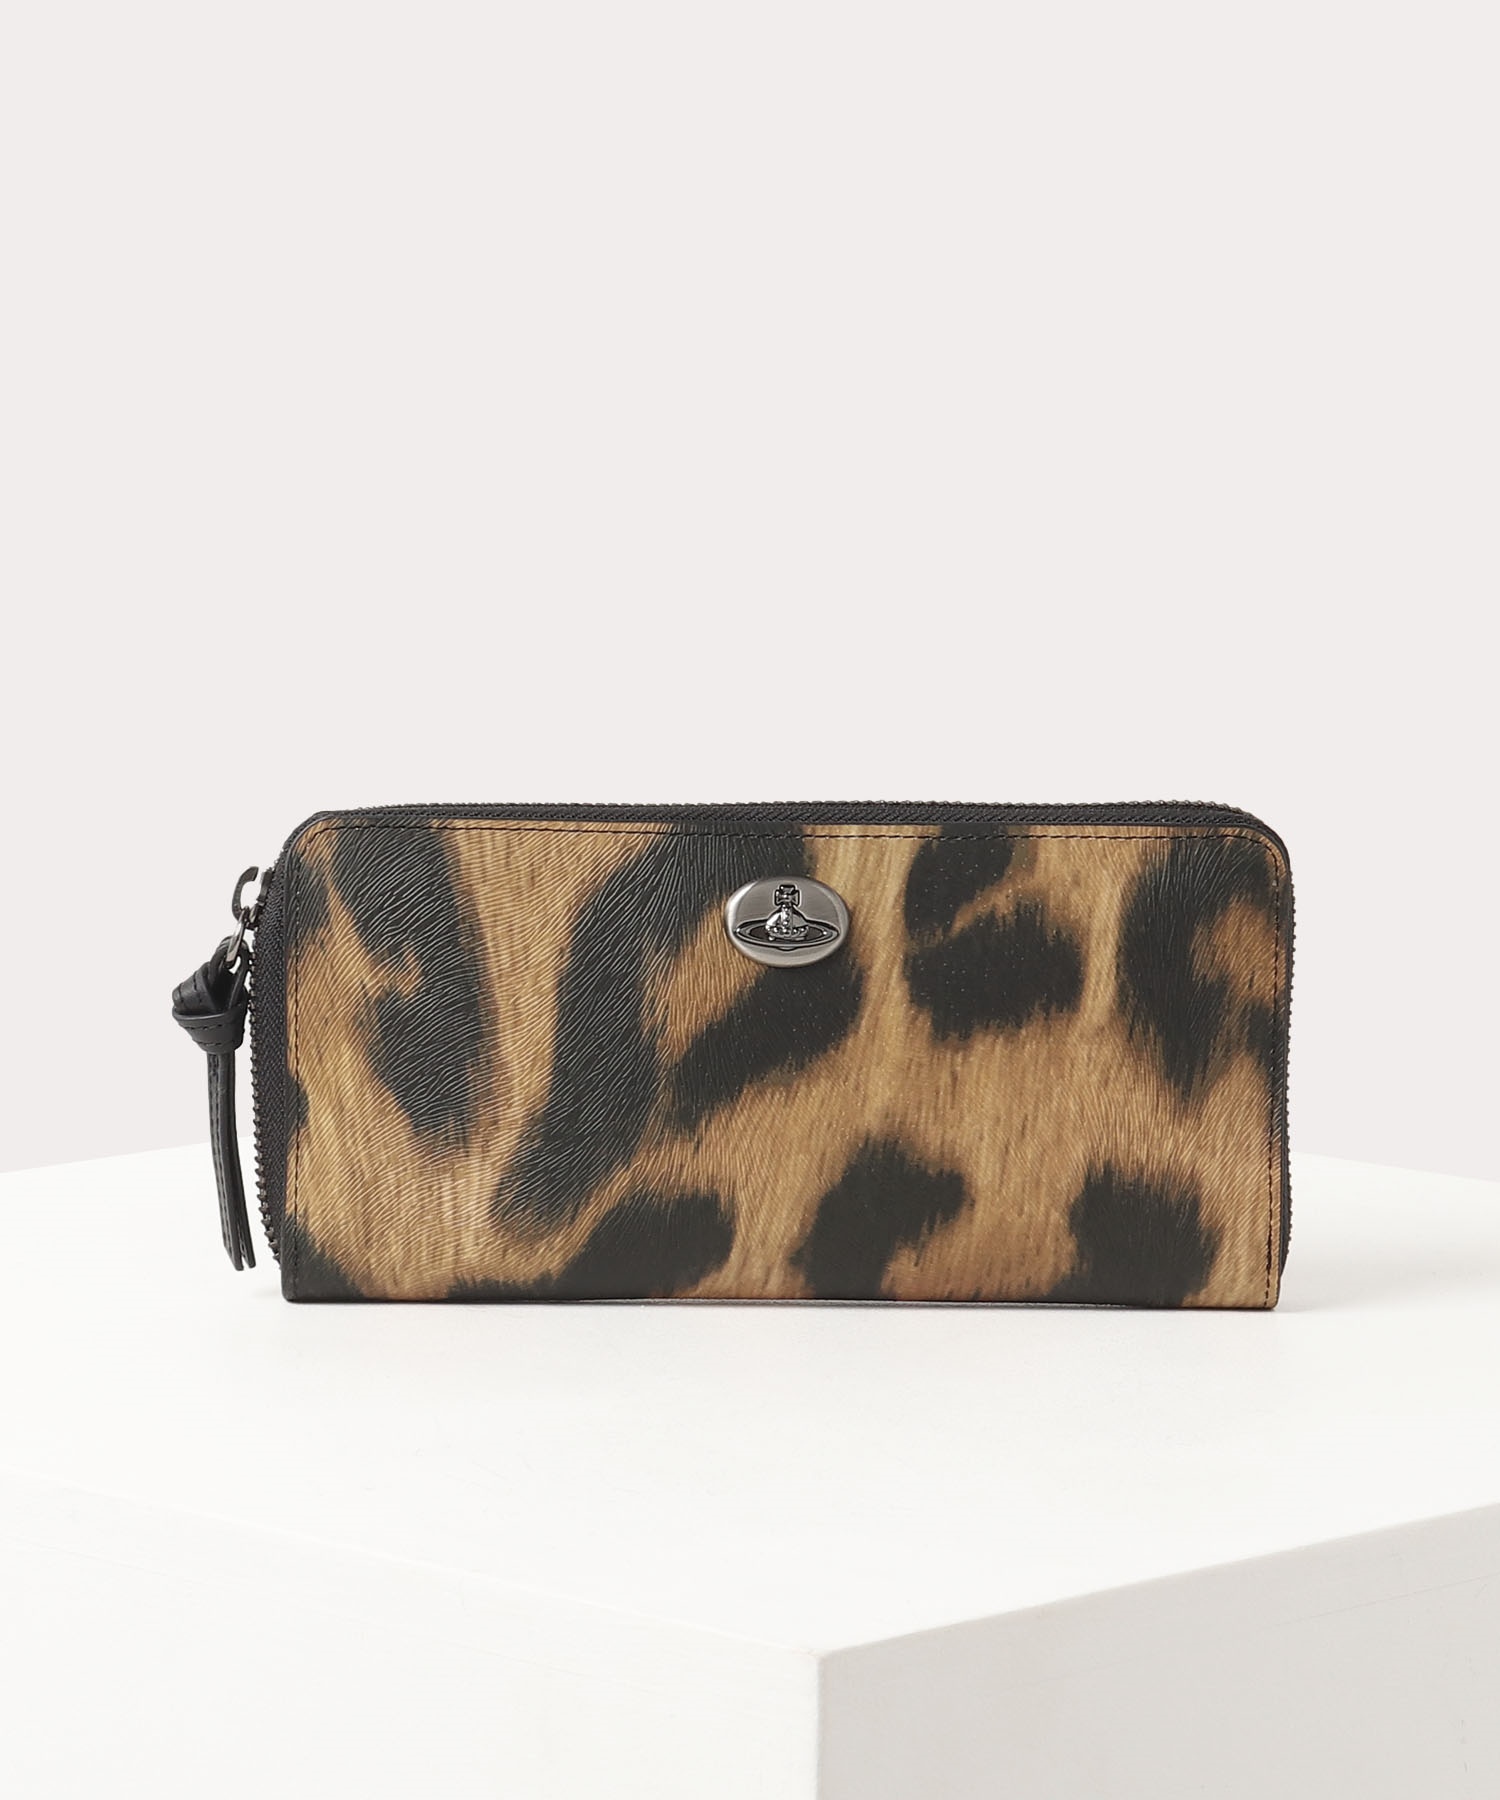 40代女性に人気の財布はVivienne Westwoodのレオパード ラウンドファスナー長財布です